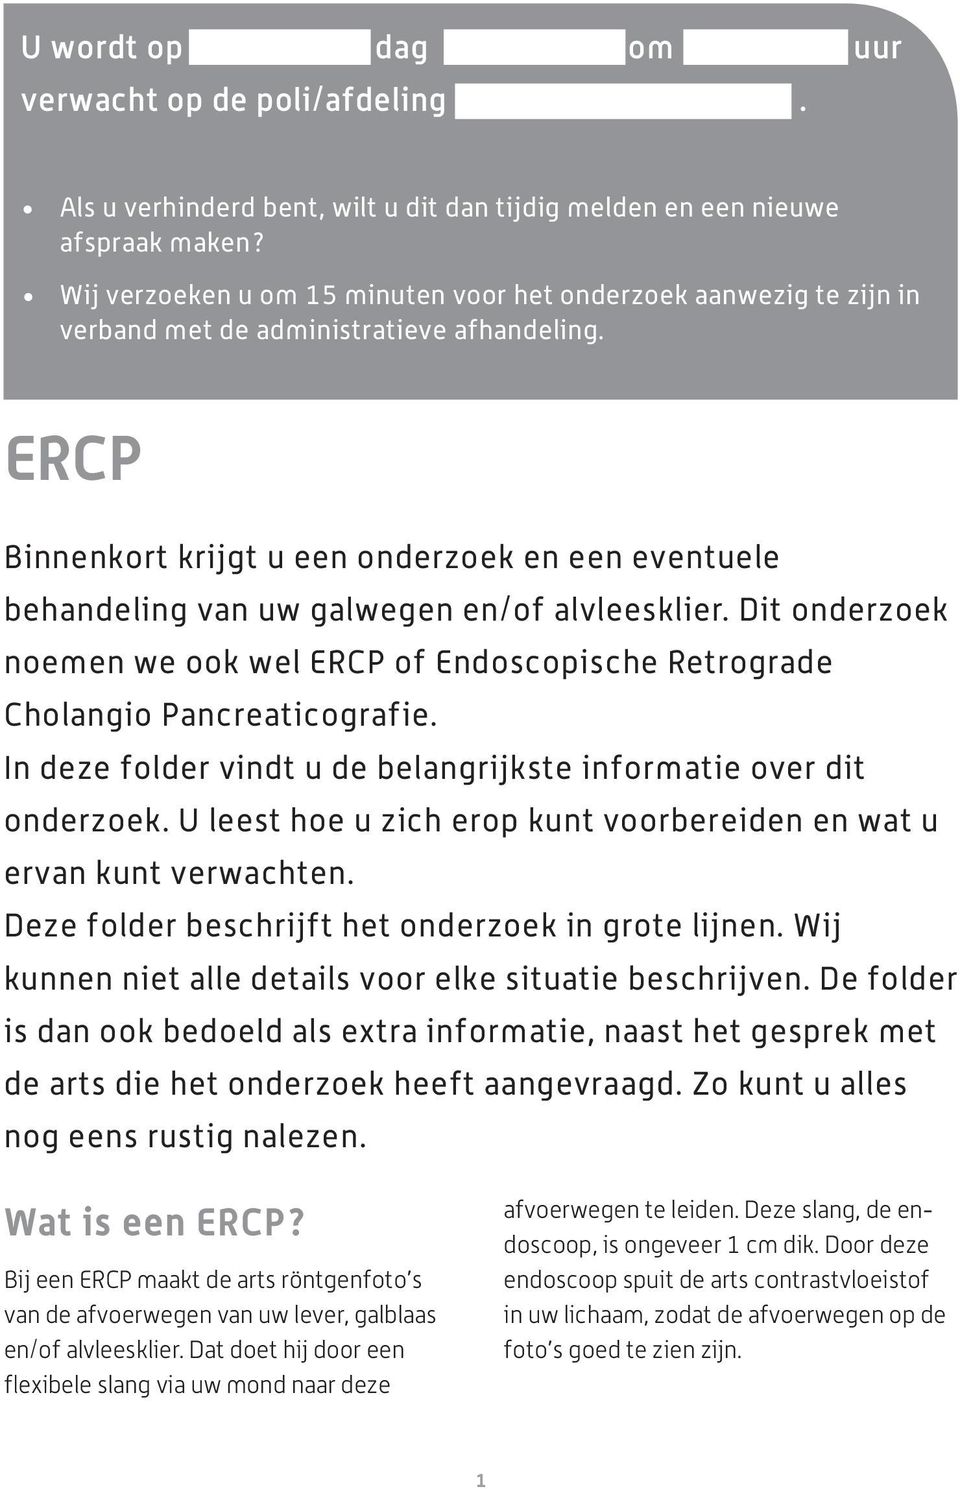 ERCP Binnenkort krijgt u een onderzoek en een eventuele behandeling van uw galwegen en/of alvleesklier. Dit onderzoek noemen we ook wel ERCP of Endoscopische Retrograde Cholangio Pancreaticografie.